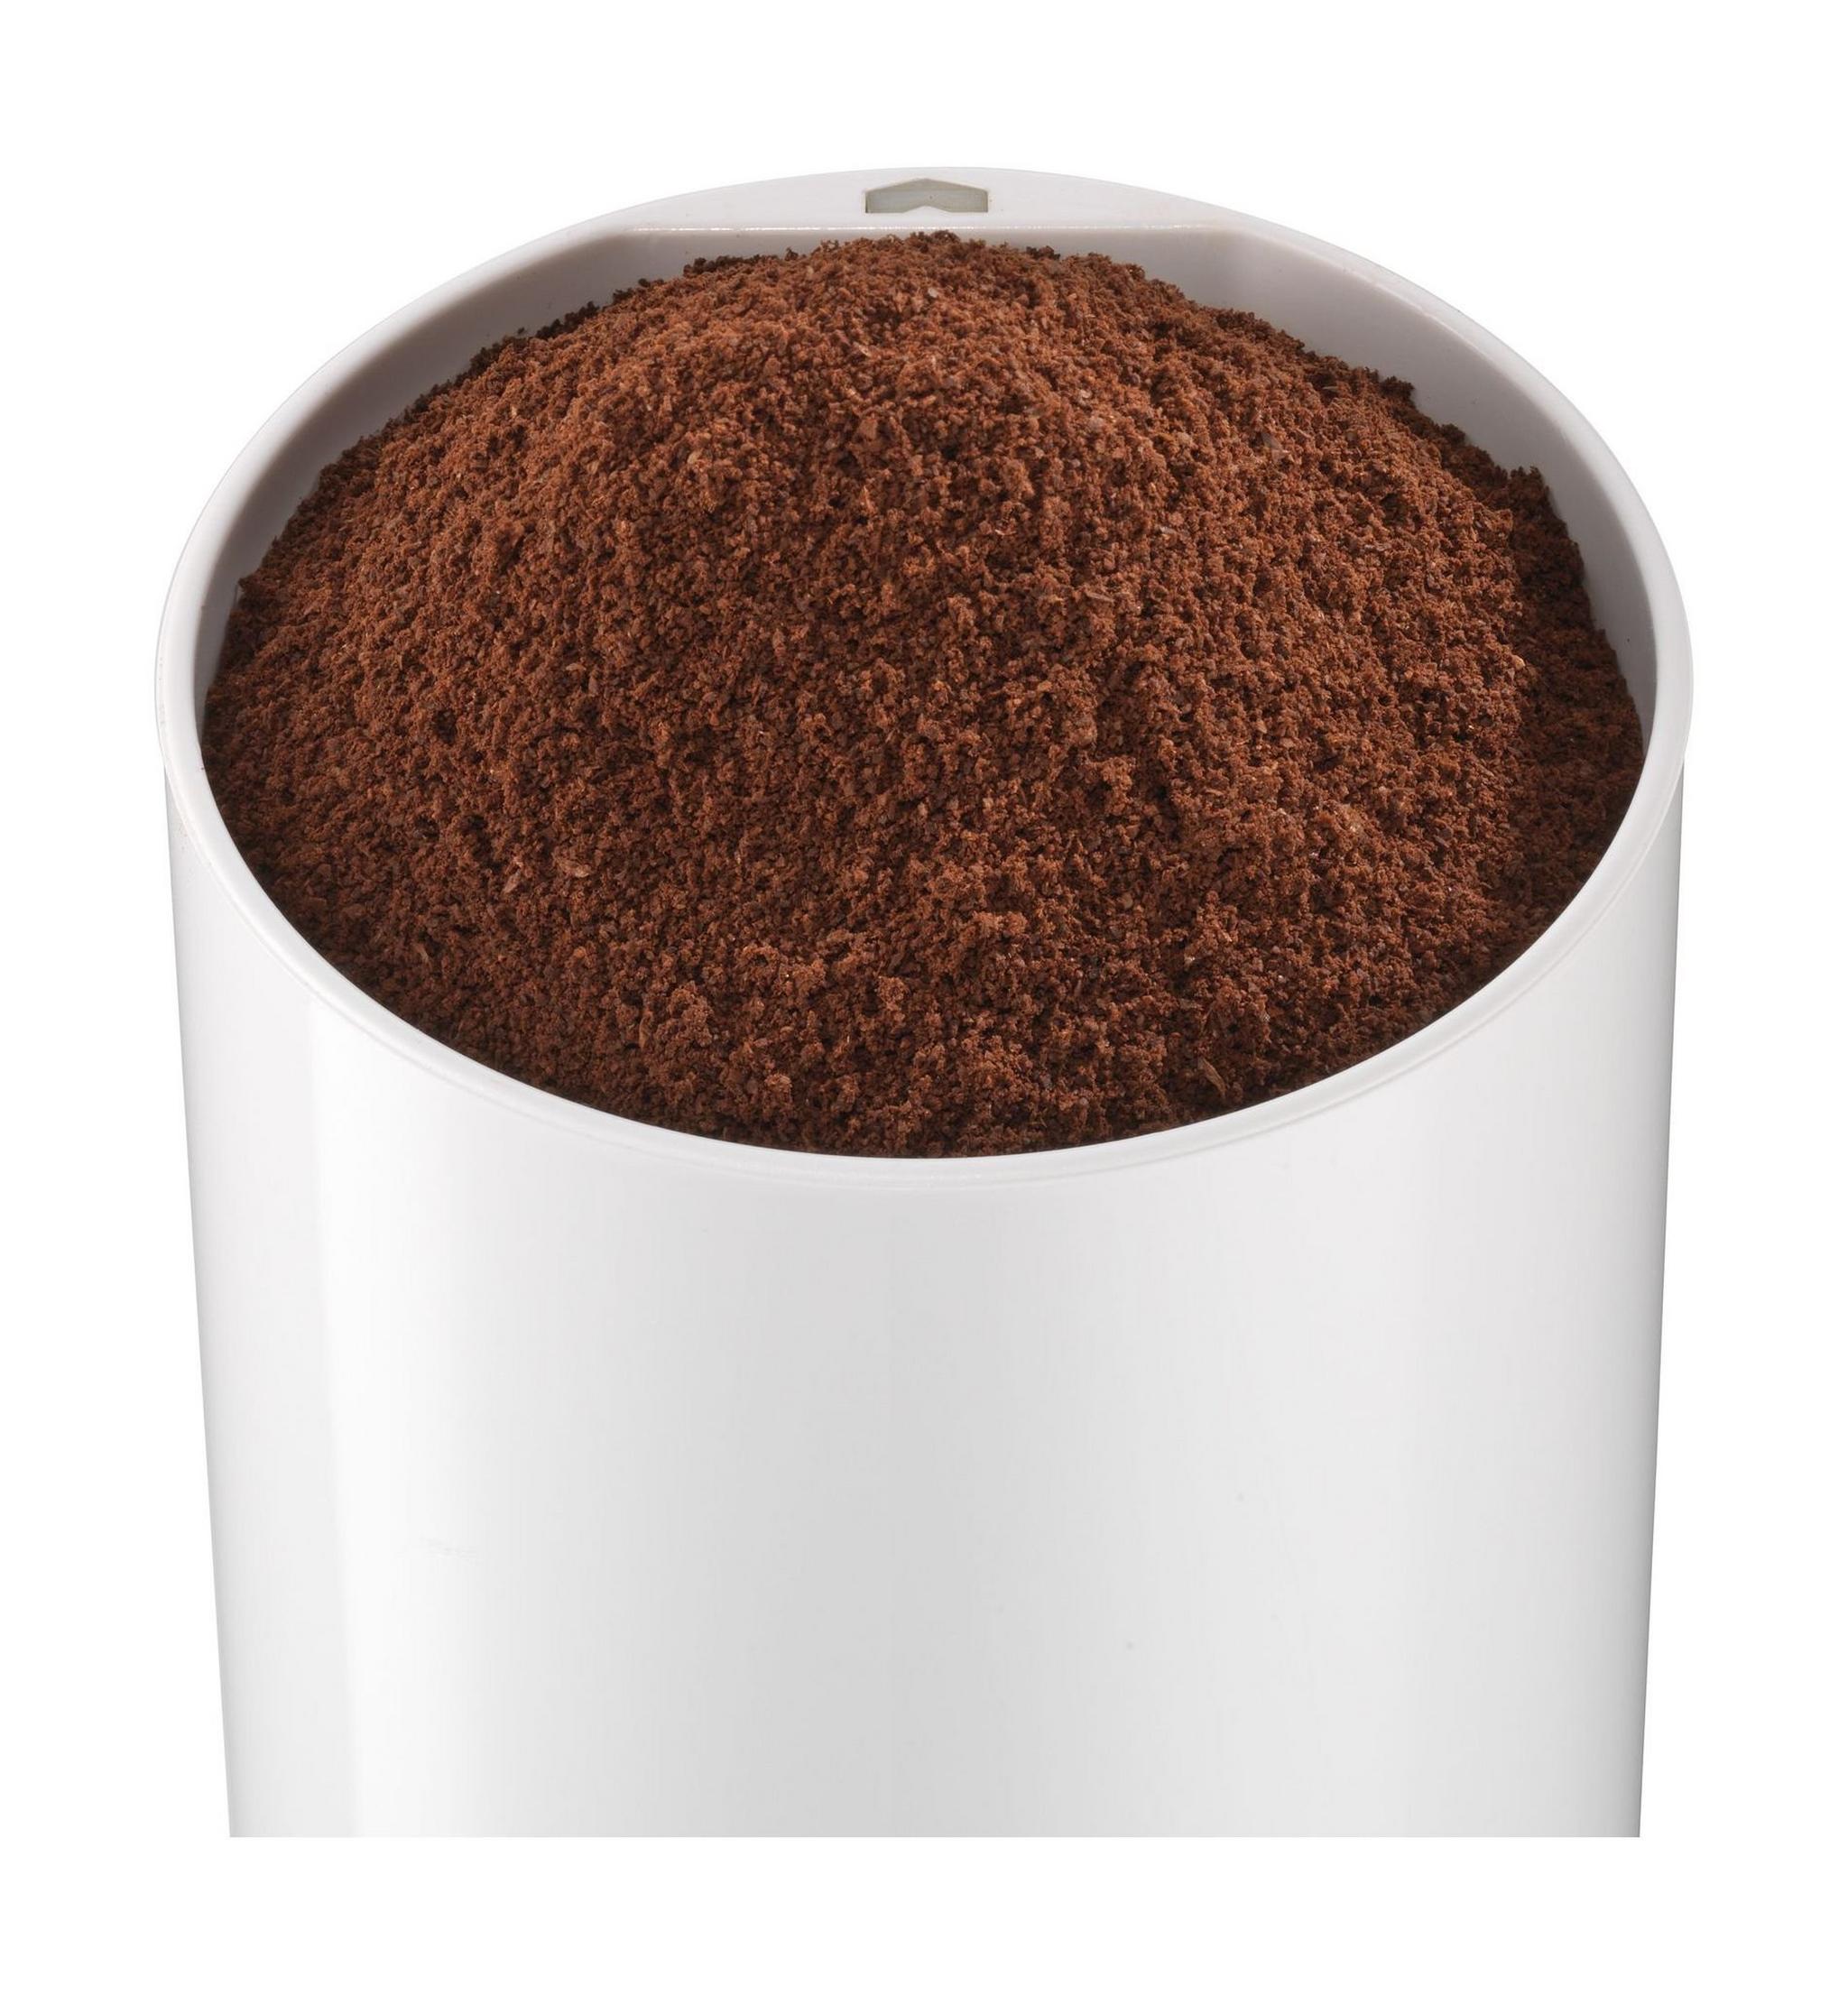 مطحنة القهوة سيمنز بقوة ١٨٠ واط وسعة ٧٥ جرام – أبيض (MC23200GB)